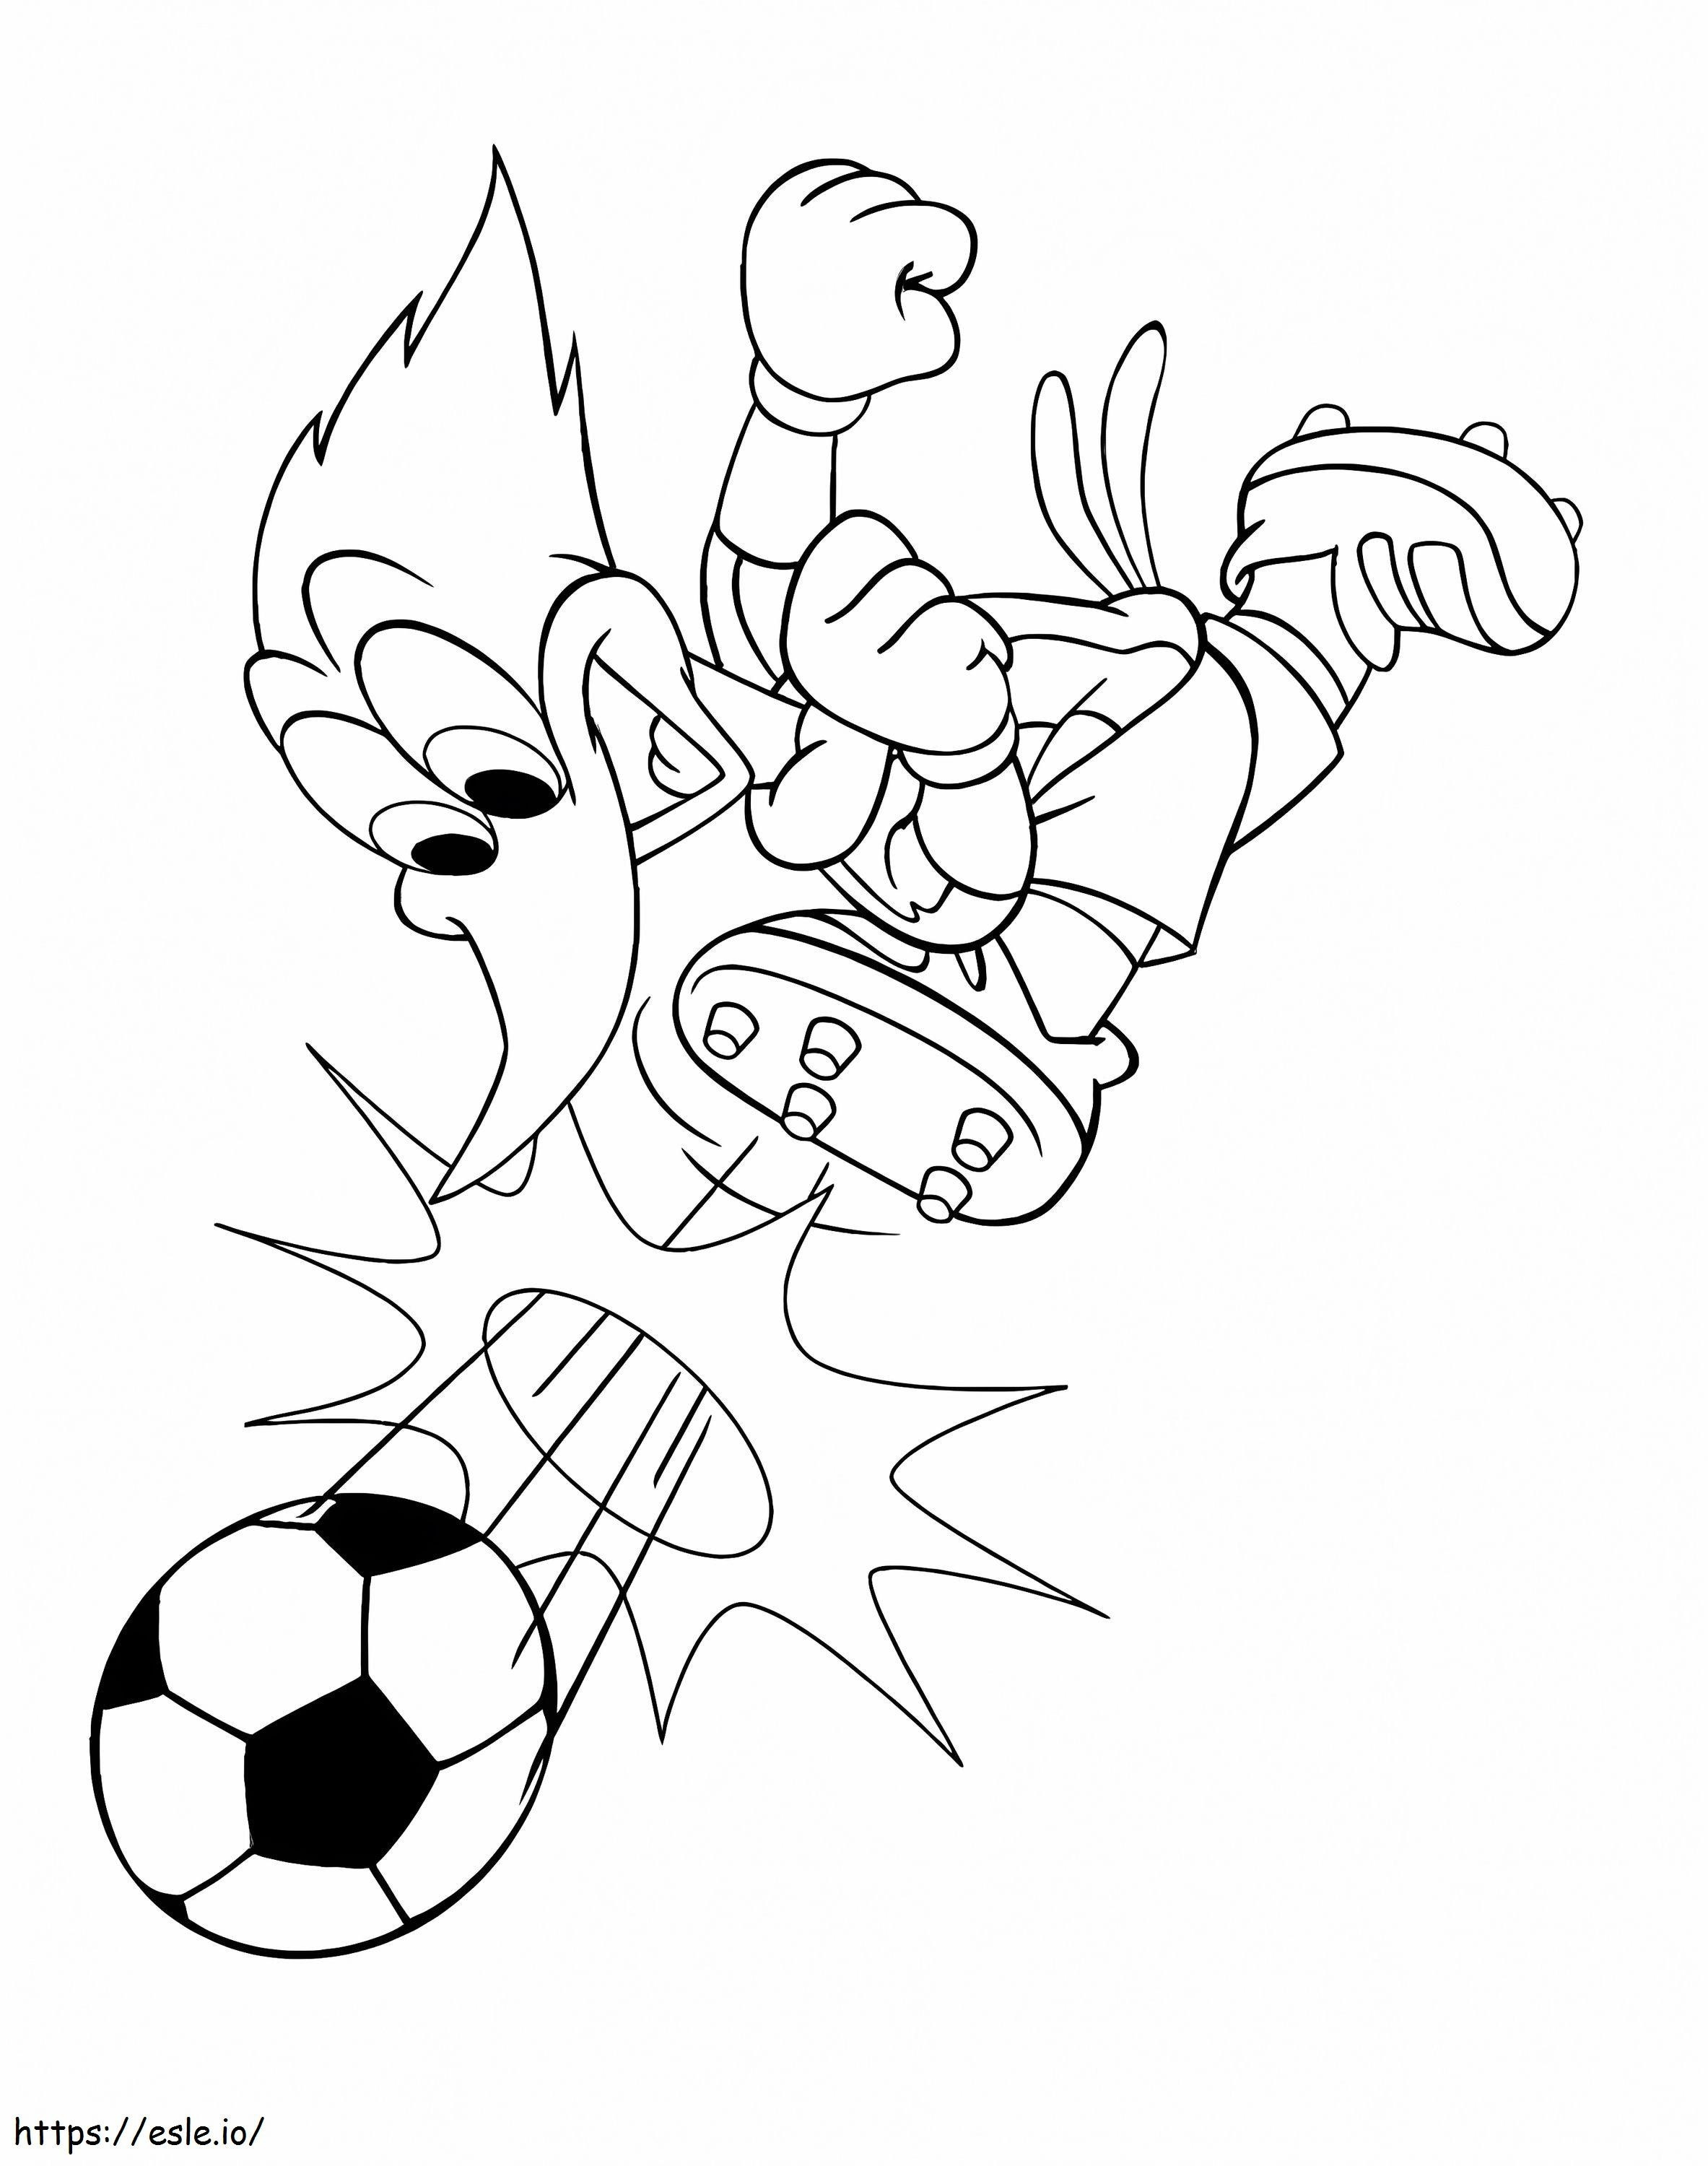 Woody Woodpecker spielt Fußball ausmalbilder